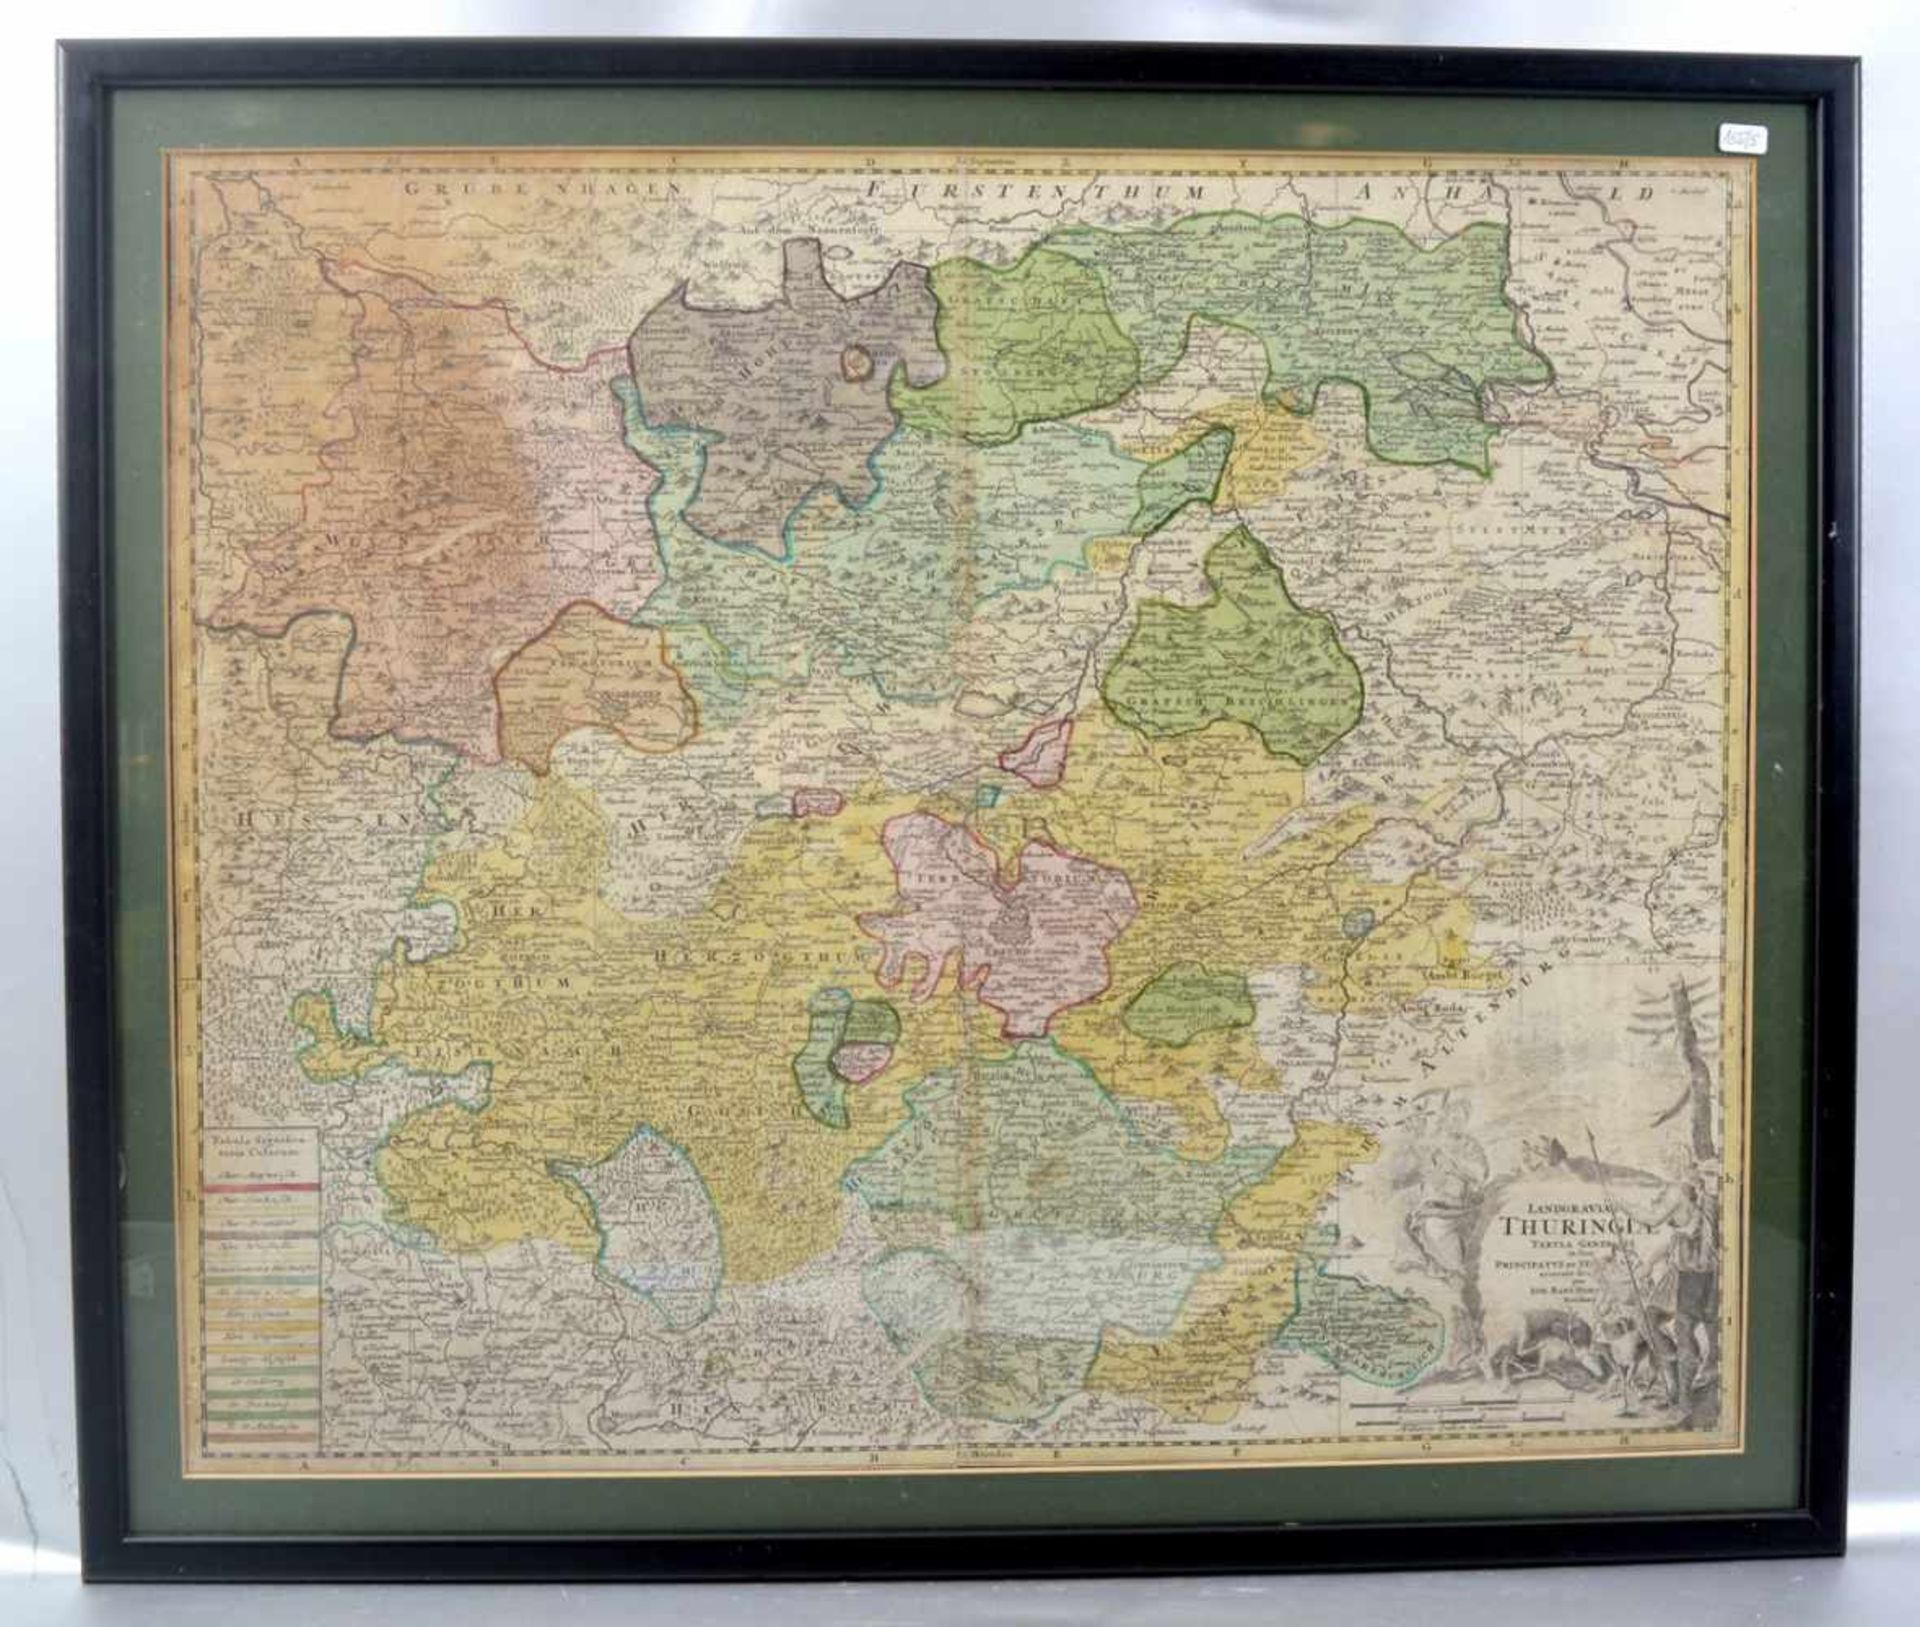 Landkarte Teilansicht von Thüringen, Hessen und Gotha, coloriert, 48 X 58 cm, Rahmen, um 1800